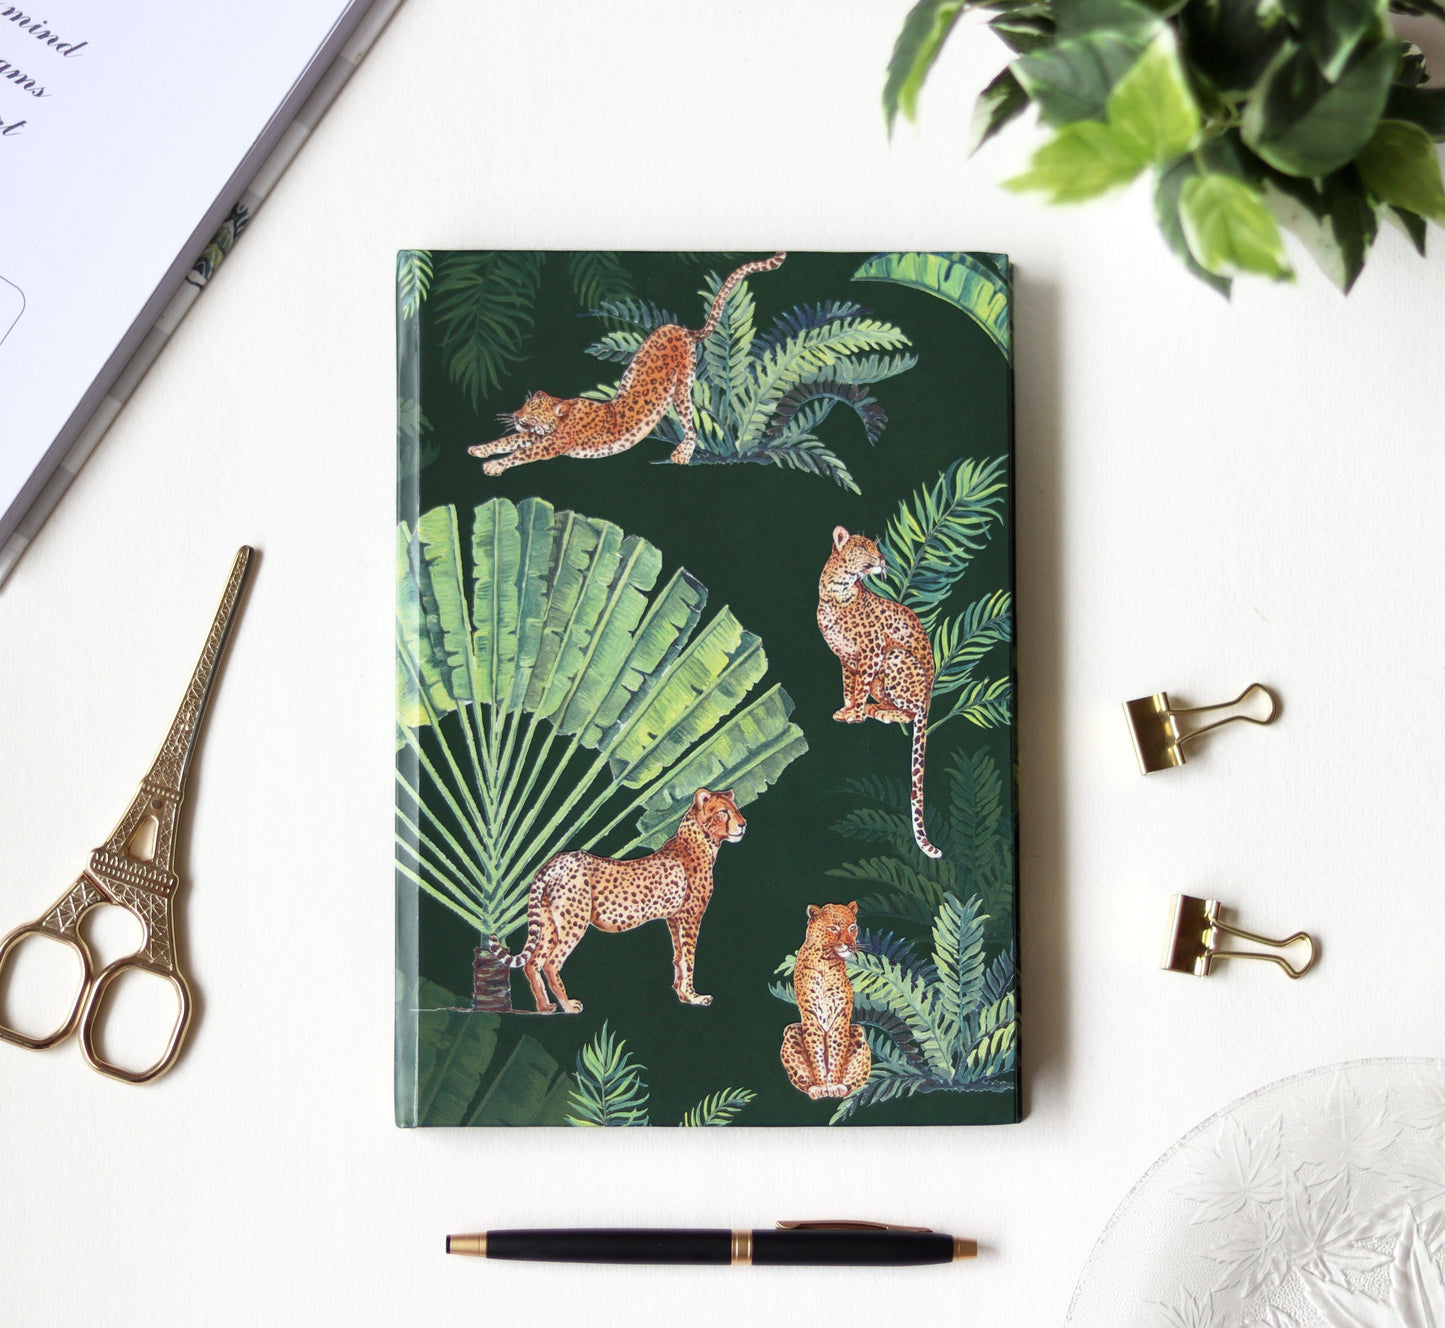 The Leopard Print Diary - Strokes by Namrata Mehta